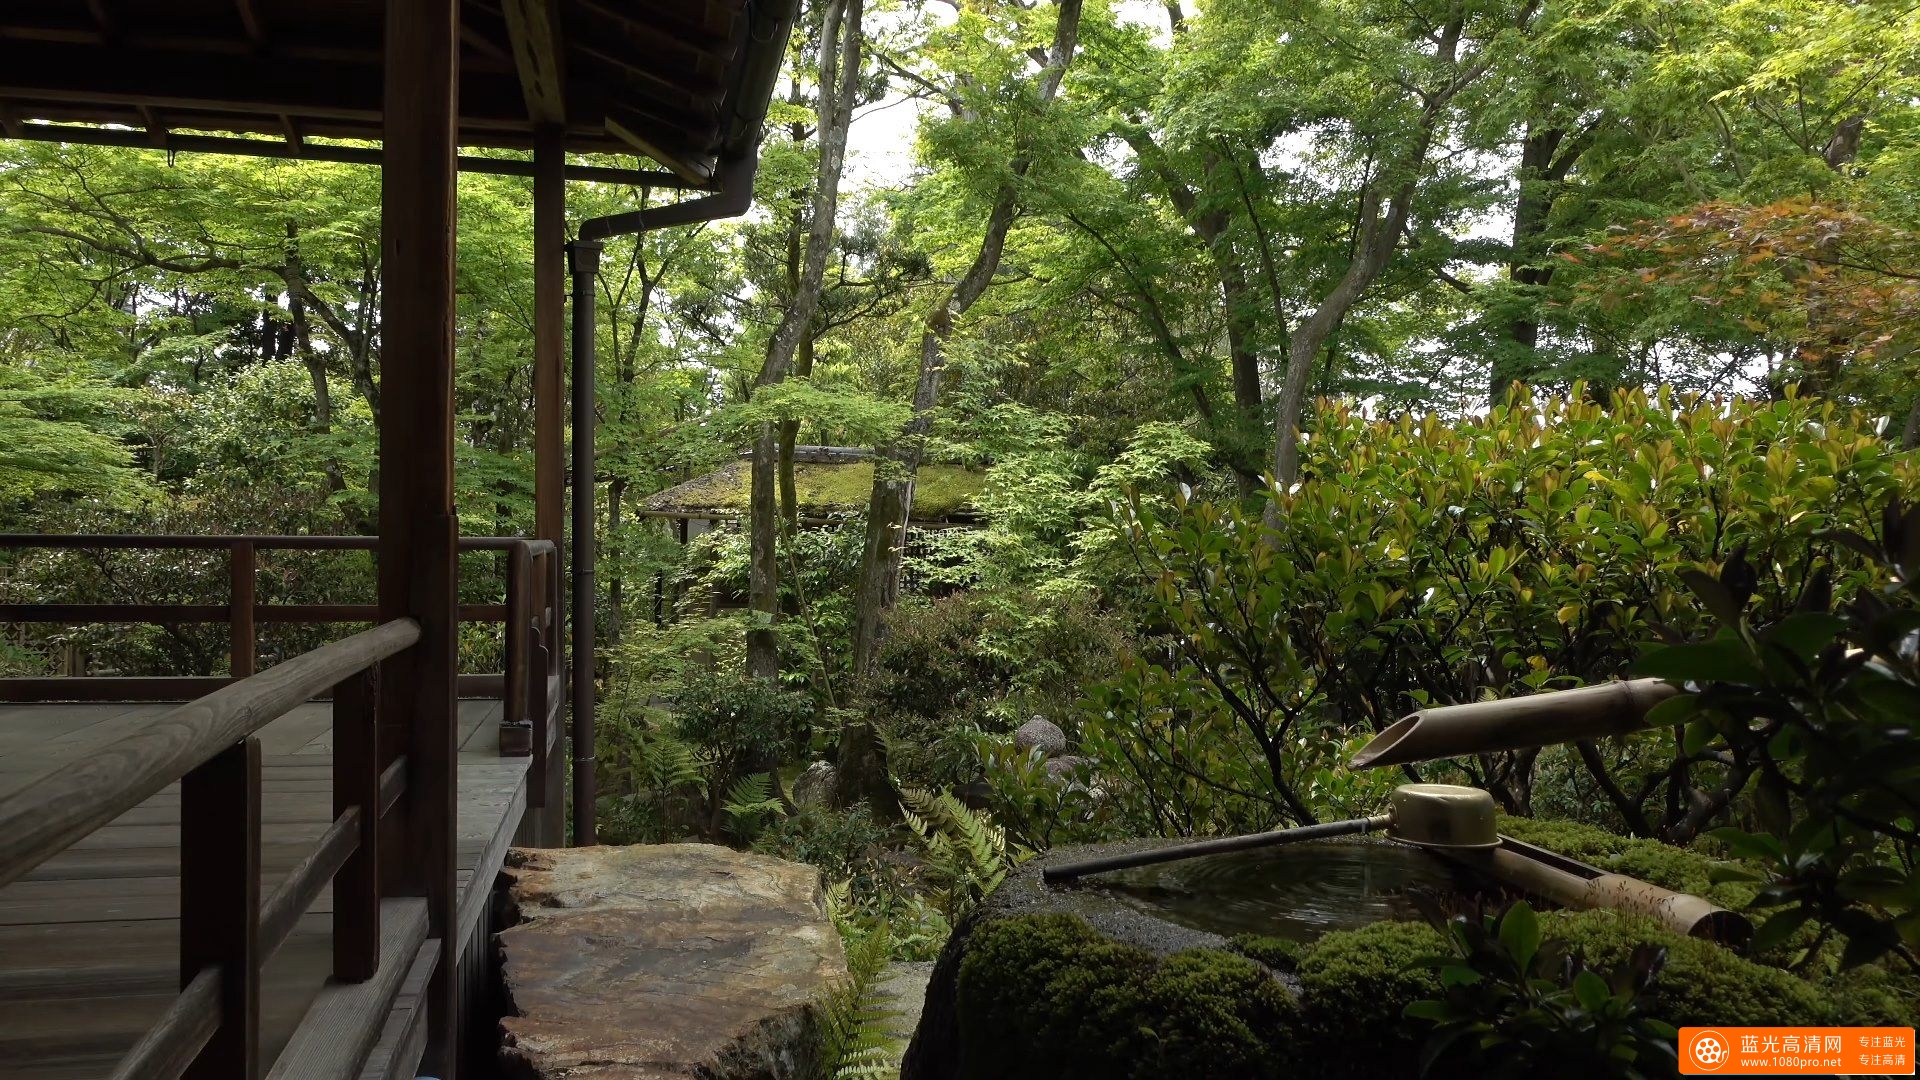 大法院・青葉 (妙心寺塔頭) 京都の庭園 Daiho-in Temple The Garden of Kyoto Japan-3.jpg